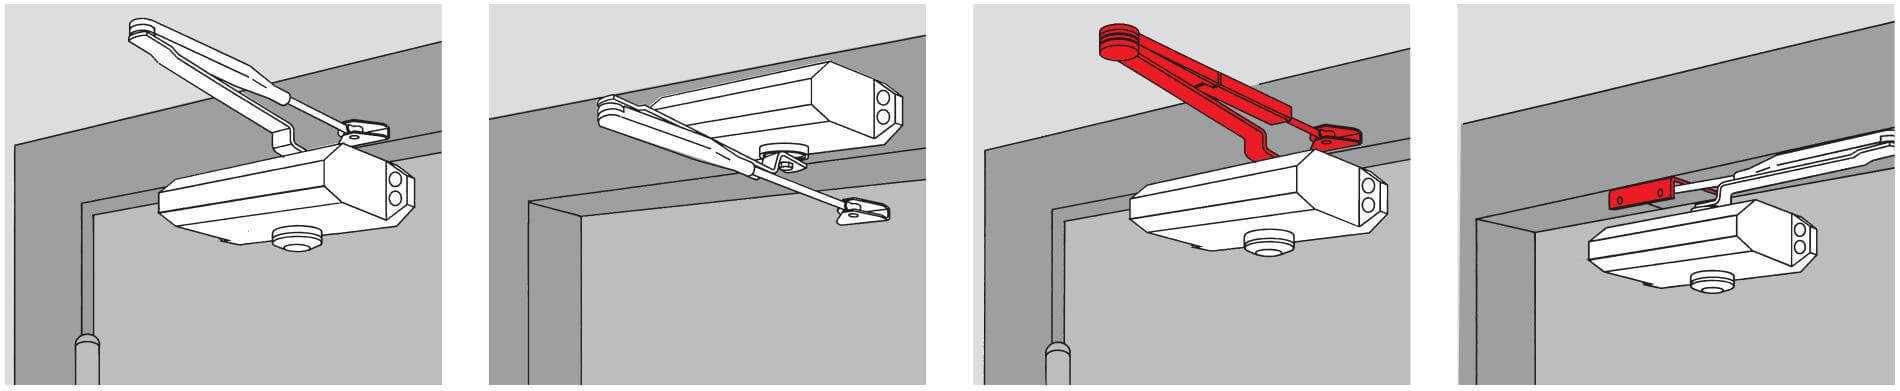 Установка доводчика на пластиковую дверь: как правильно поставить устройство